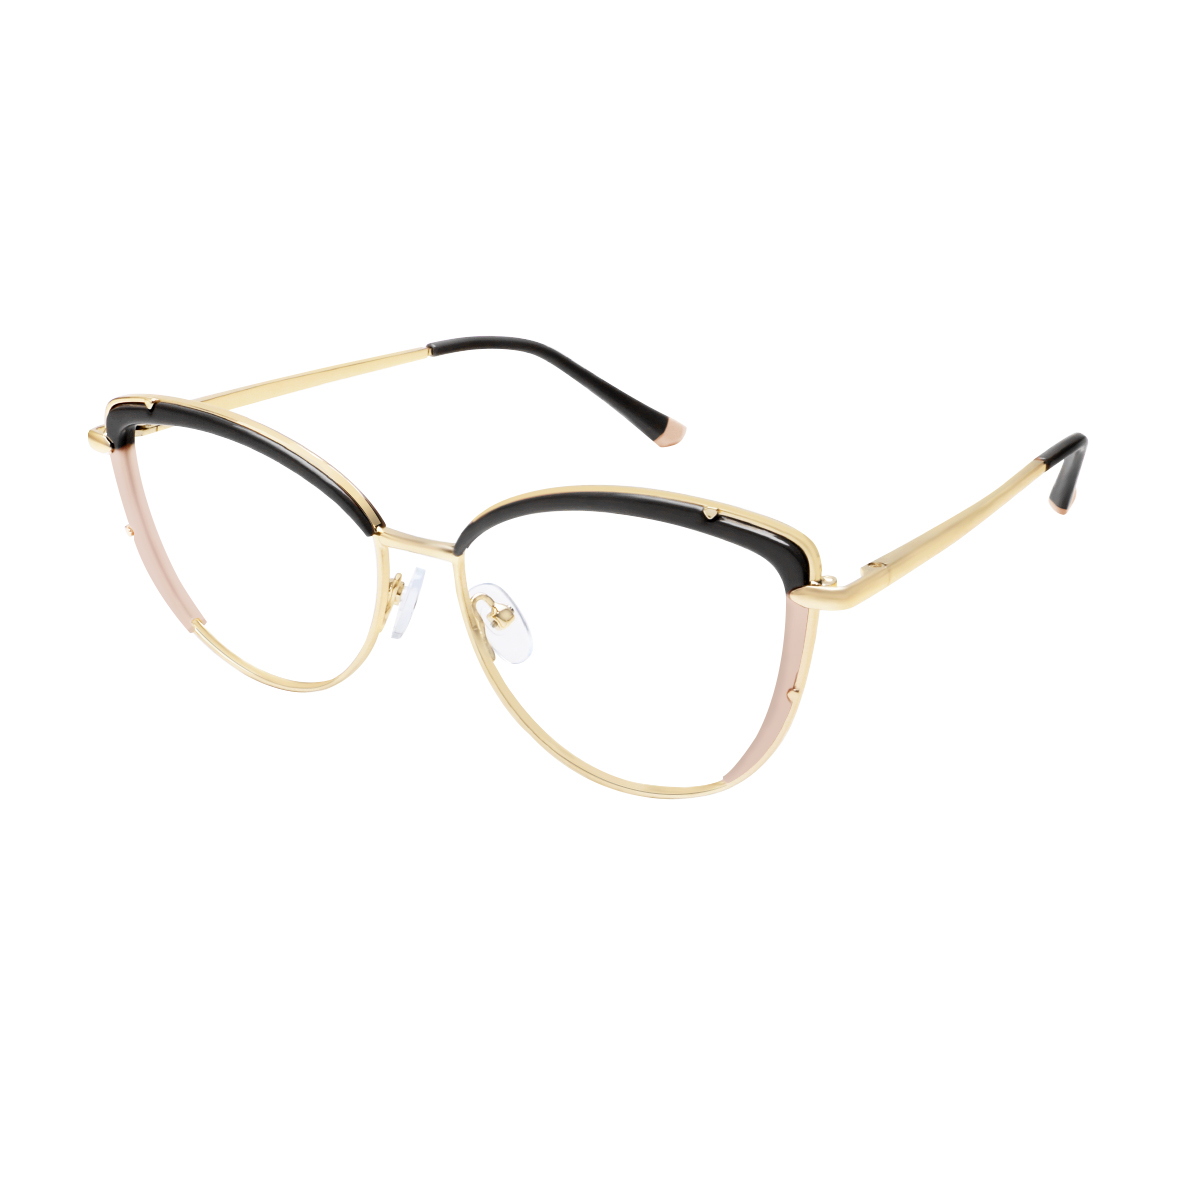 Romy - Square Black-Gold Reading Glasses for Women